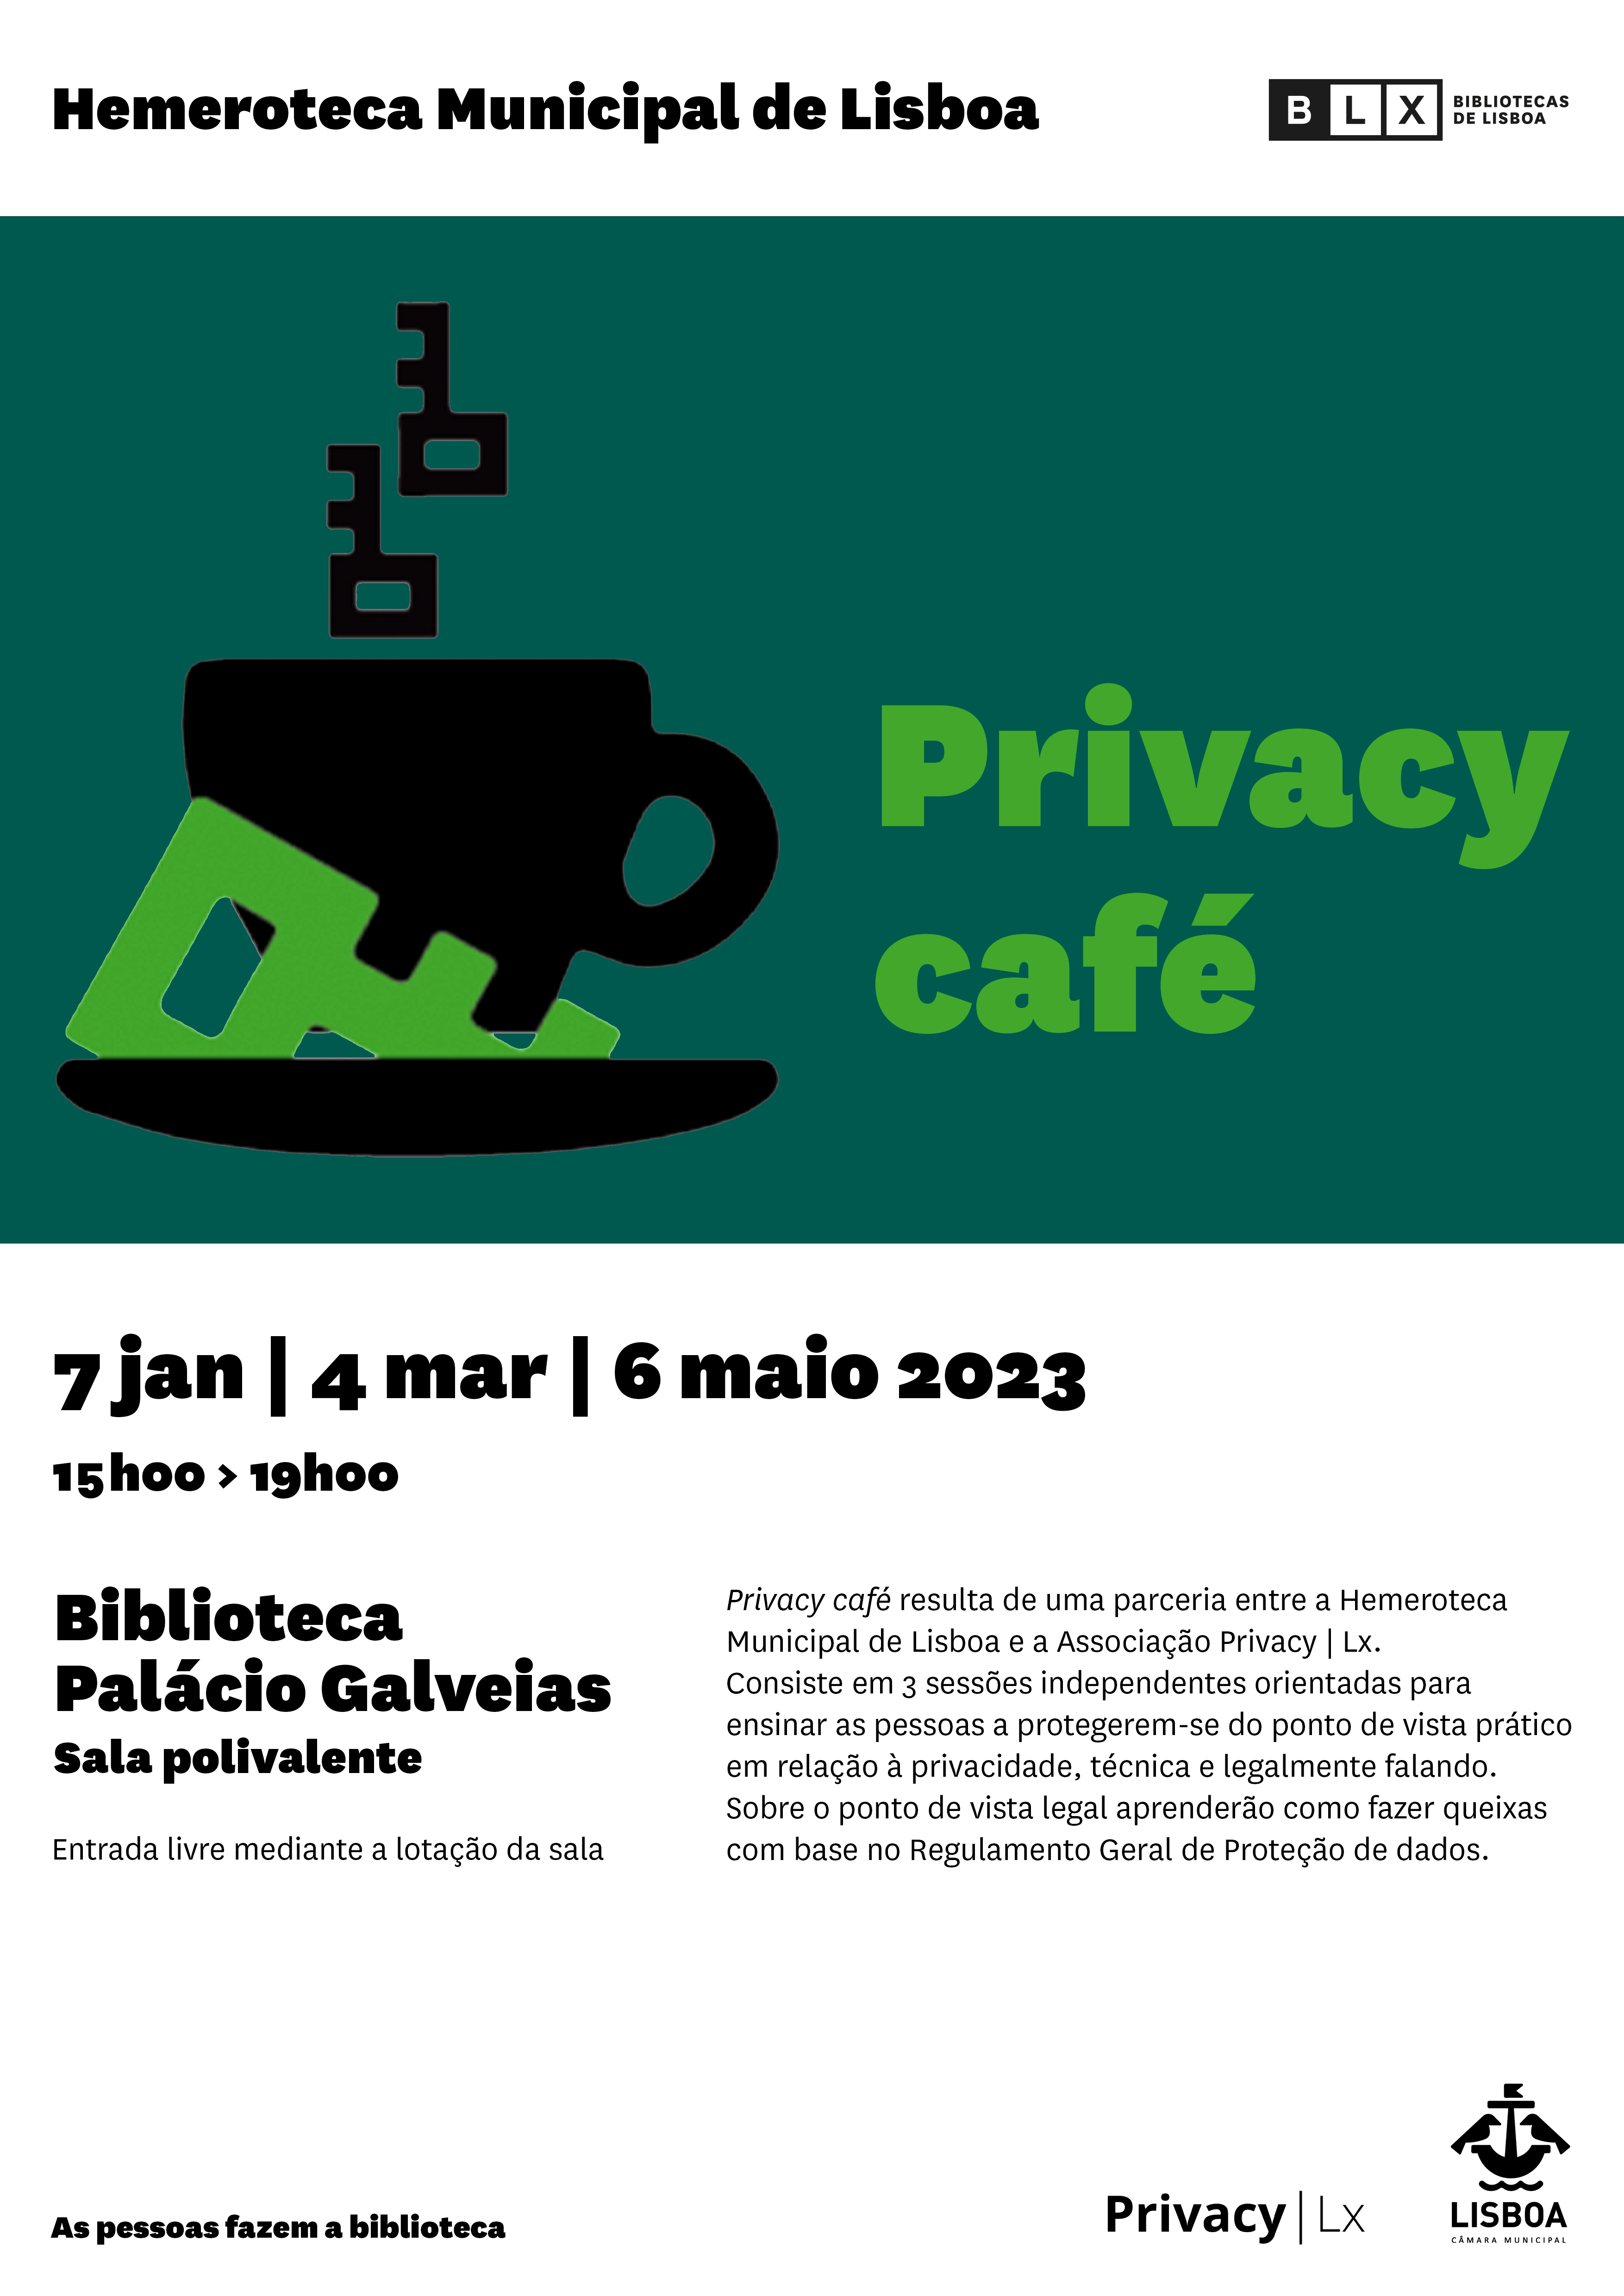 Imagem privacy-cafe